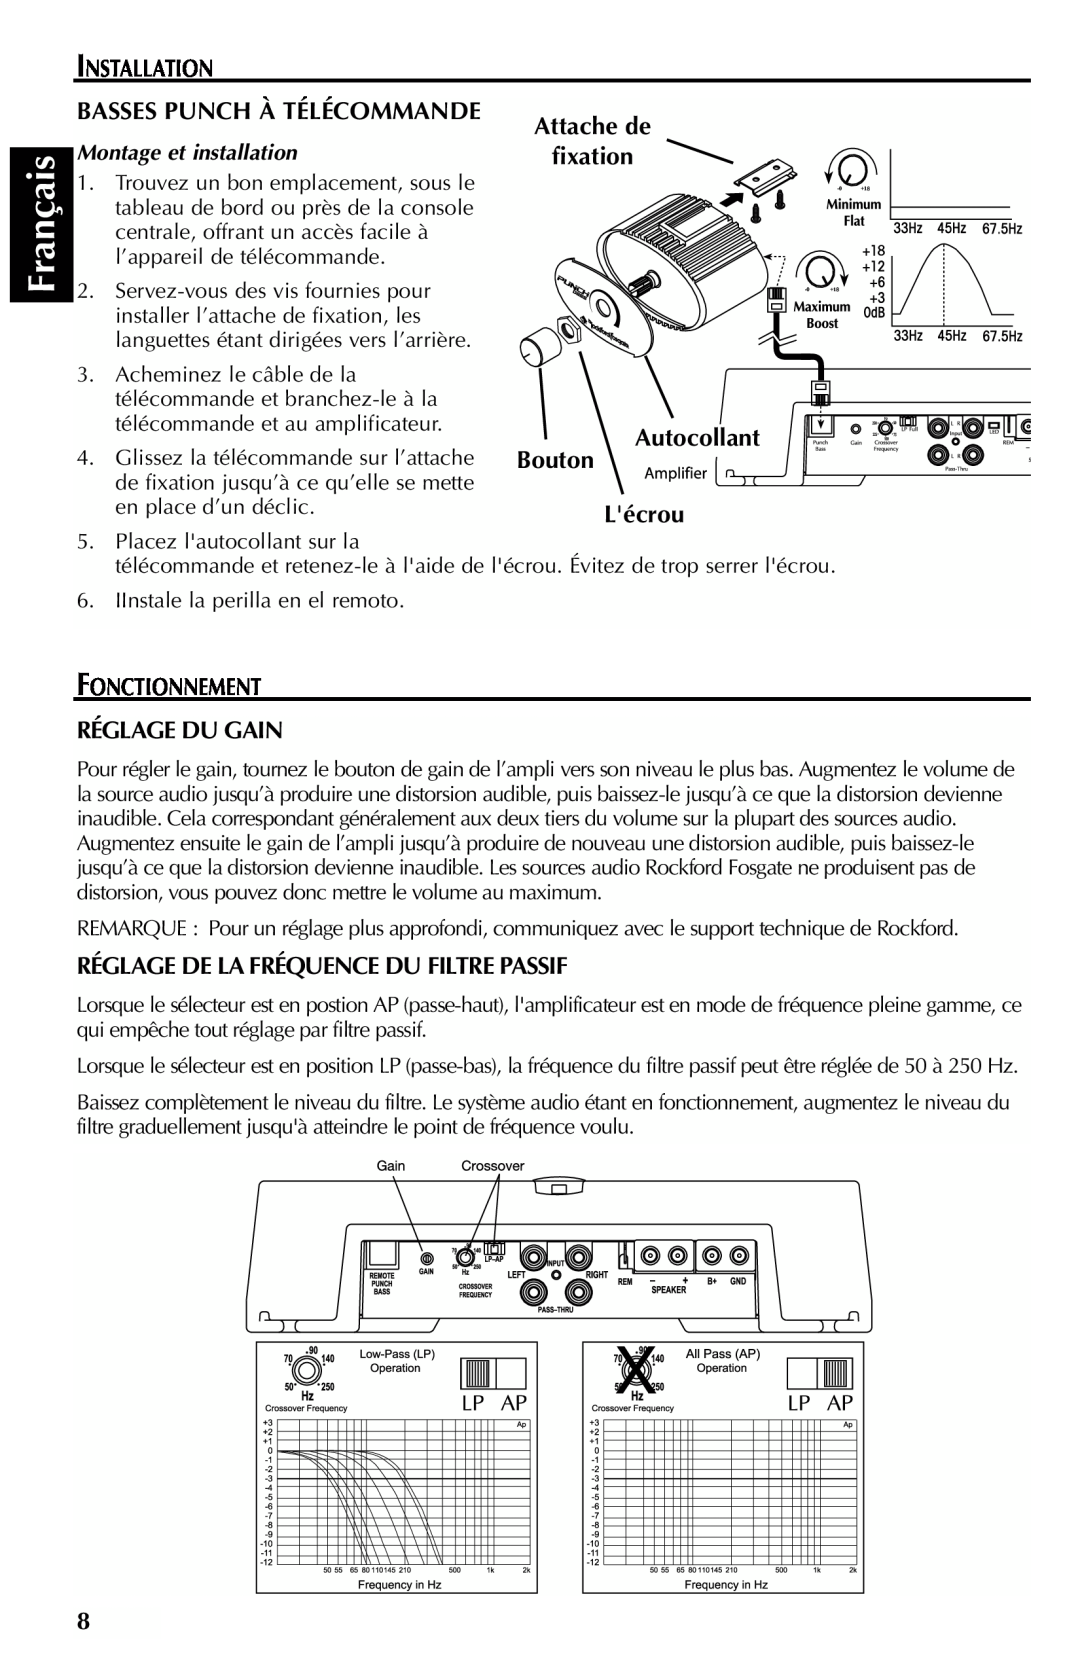 Rockford Fosgate 351M manual Français, Installation, Basses Punch À Télécommande, Autocollant Bouton Lécrou, fixation 